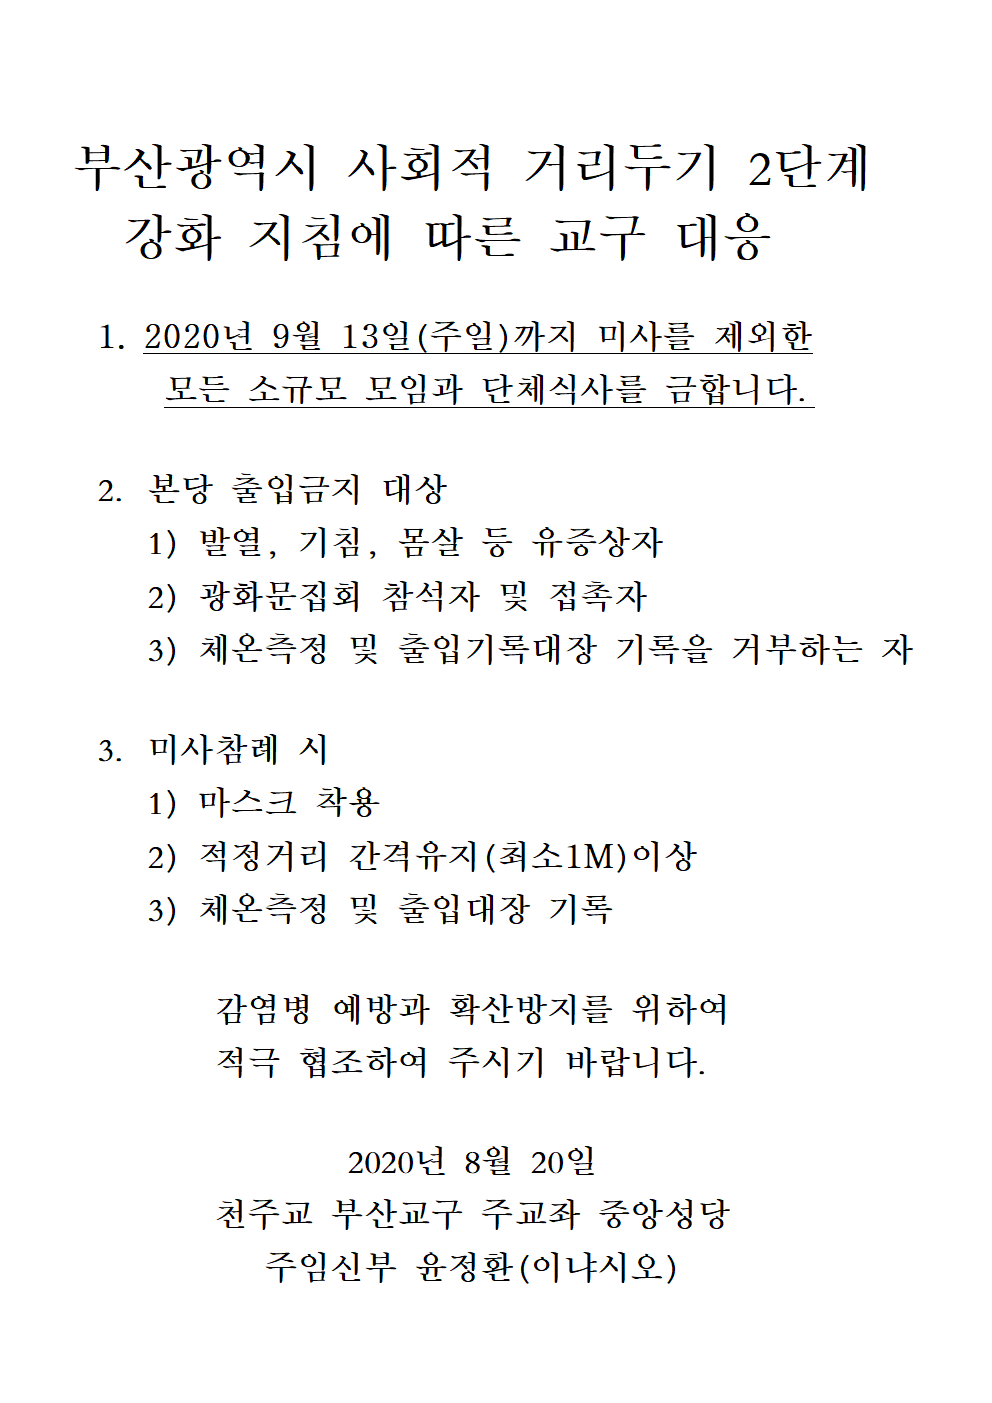 부산광역시 사회적 거리두기 2단계001.png